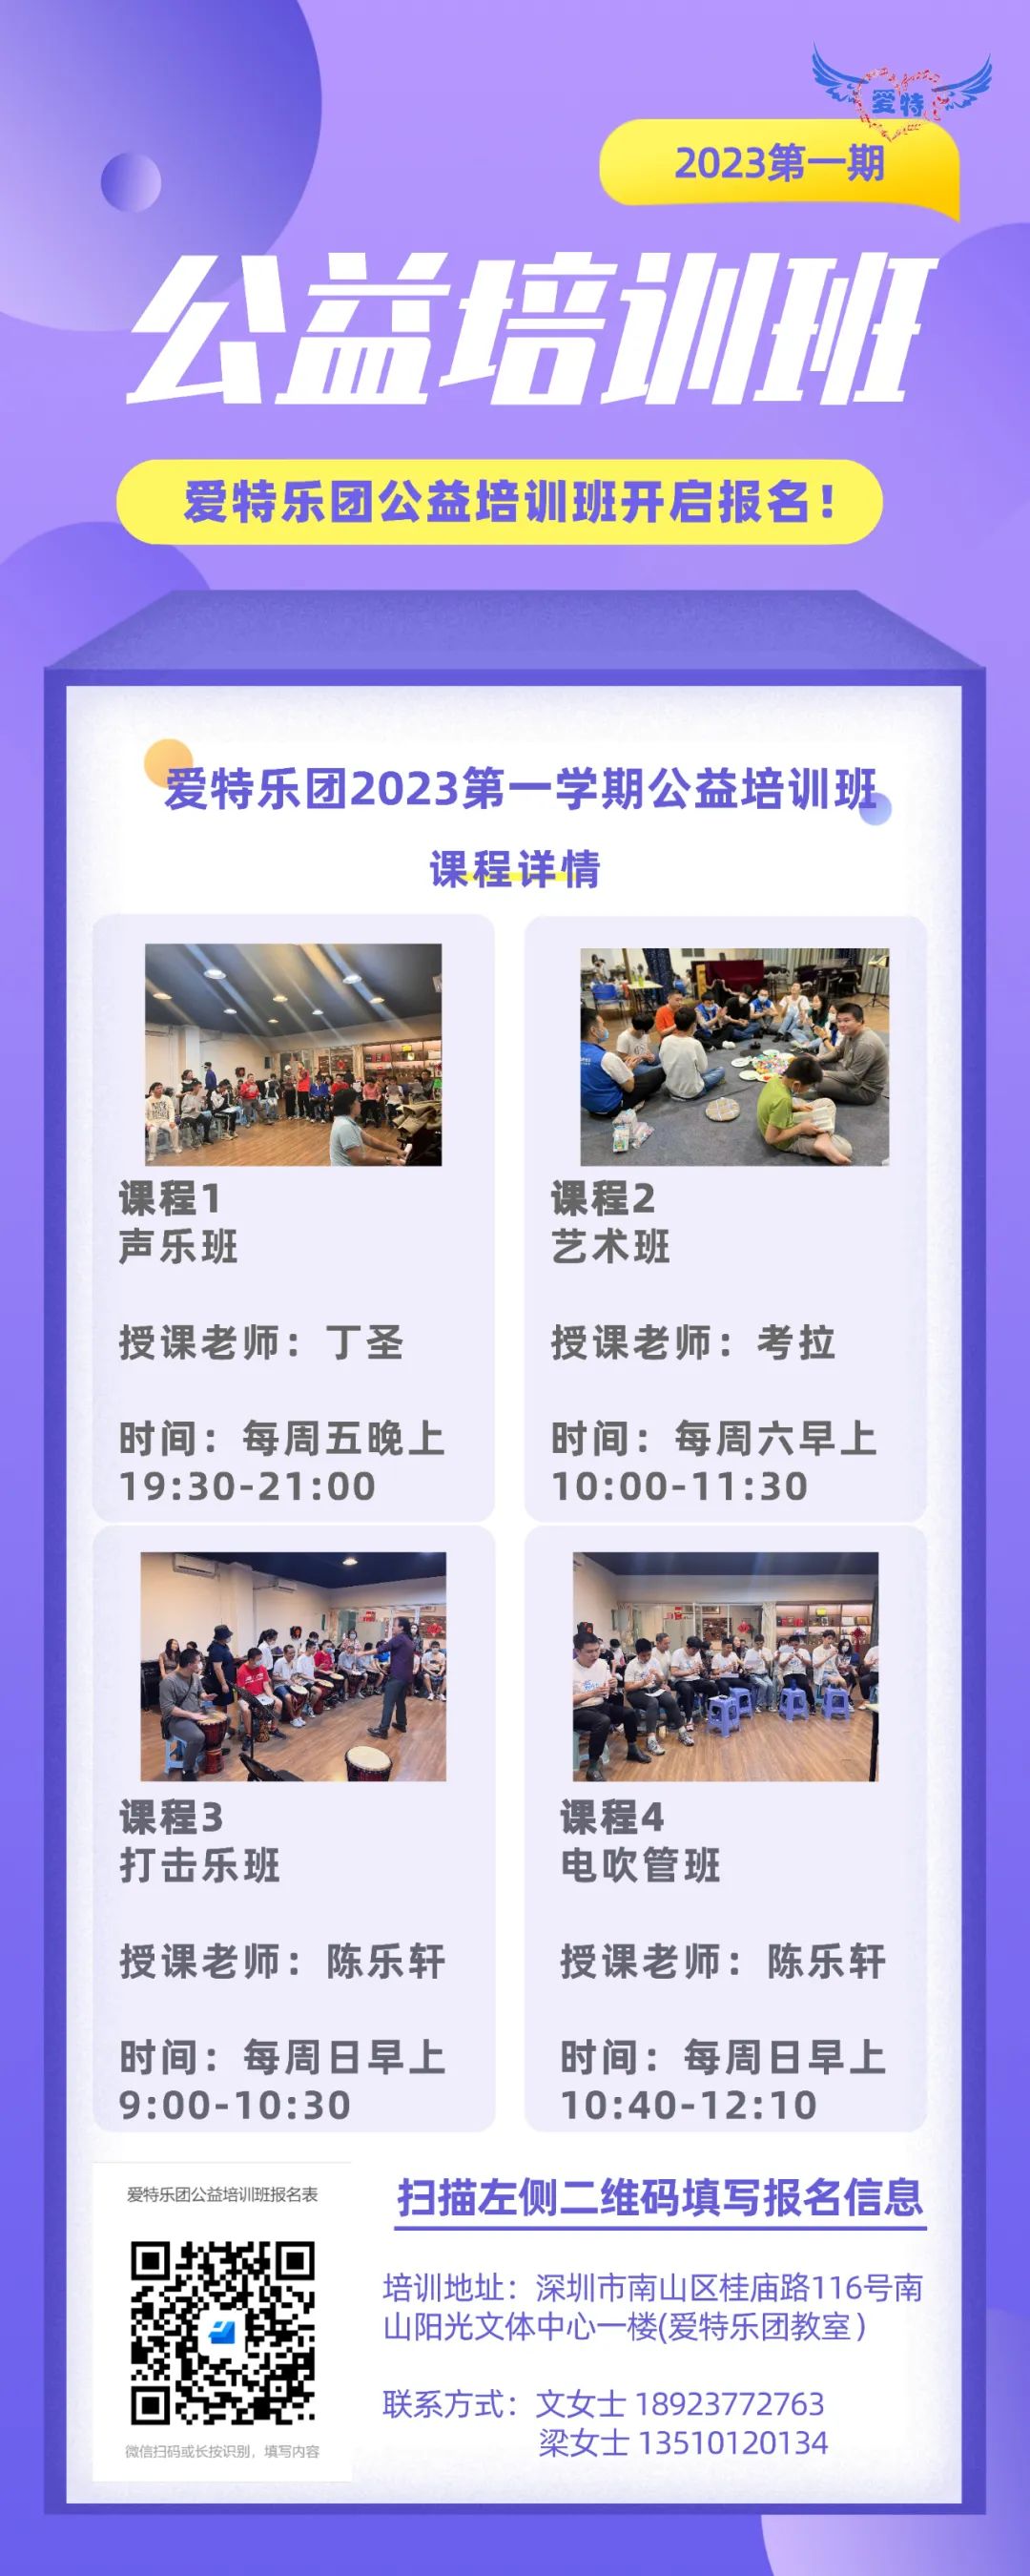 深圳市爱特乐团2023第一期公益培训开启